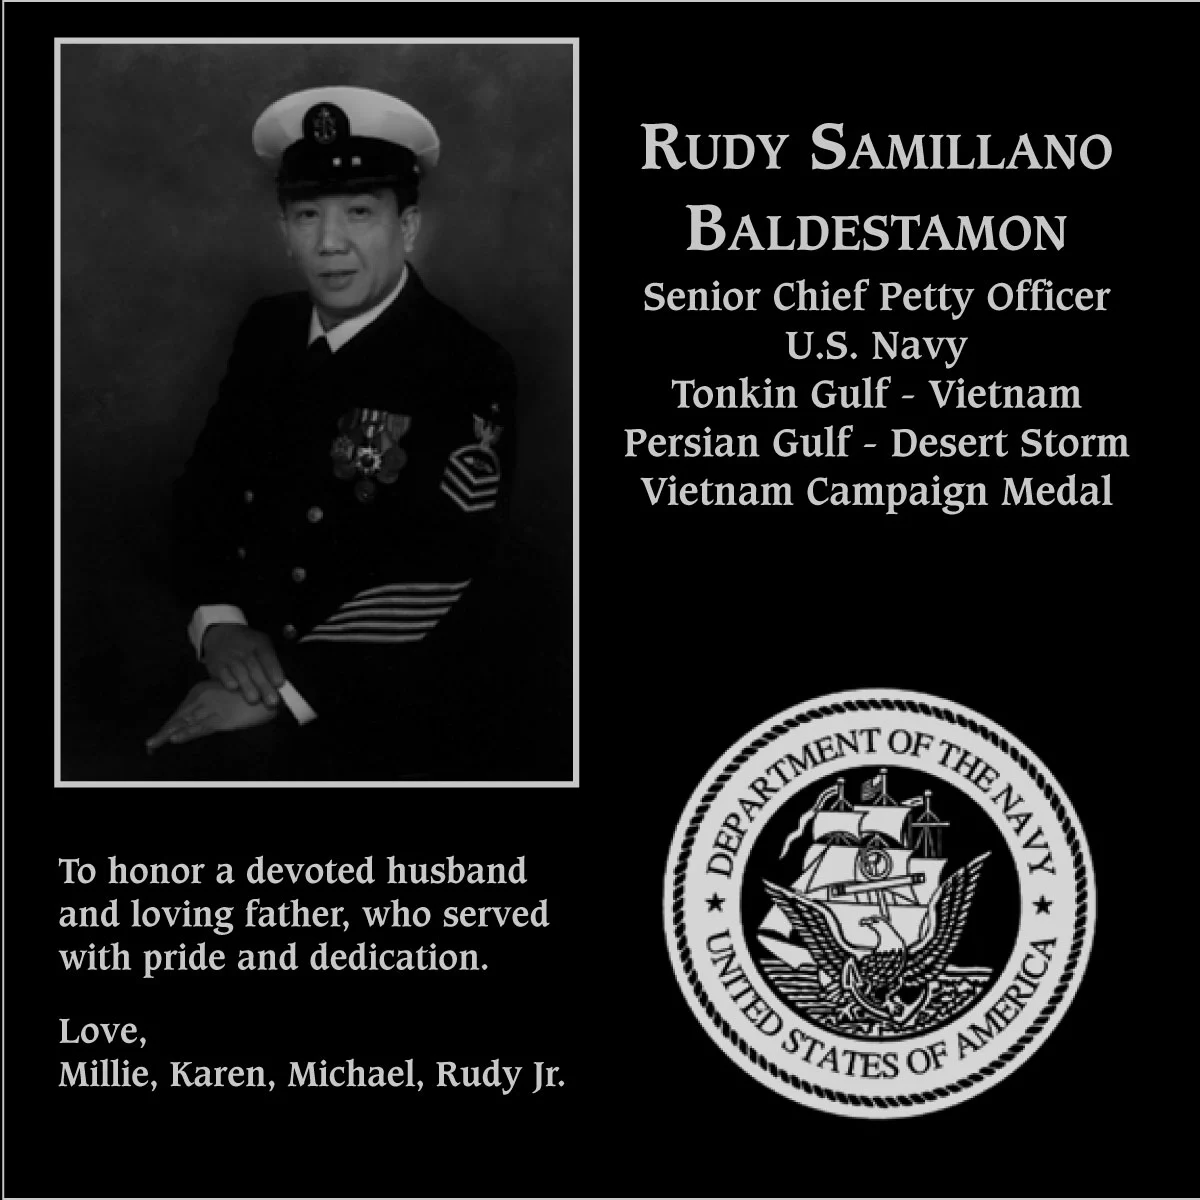 Rudy Samillano Baldestamon